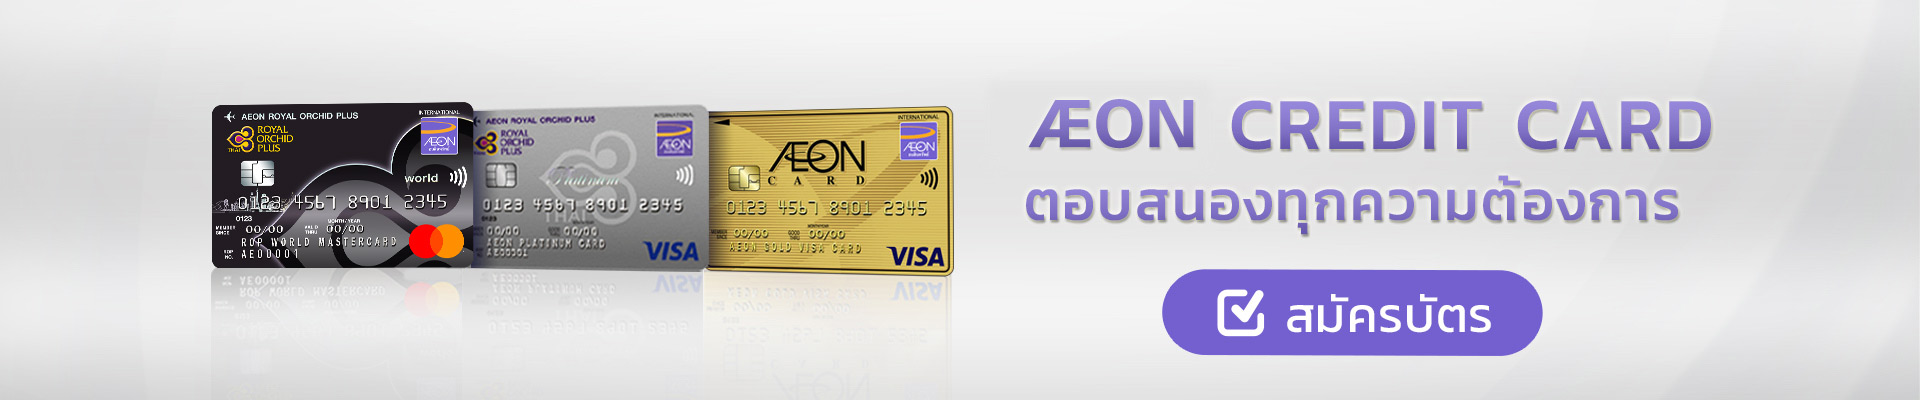 AEON Card Banner